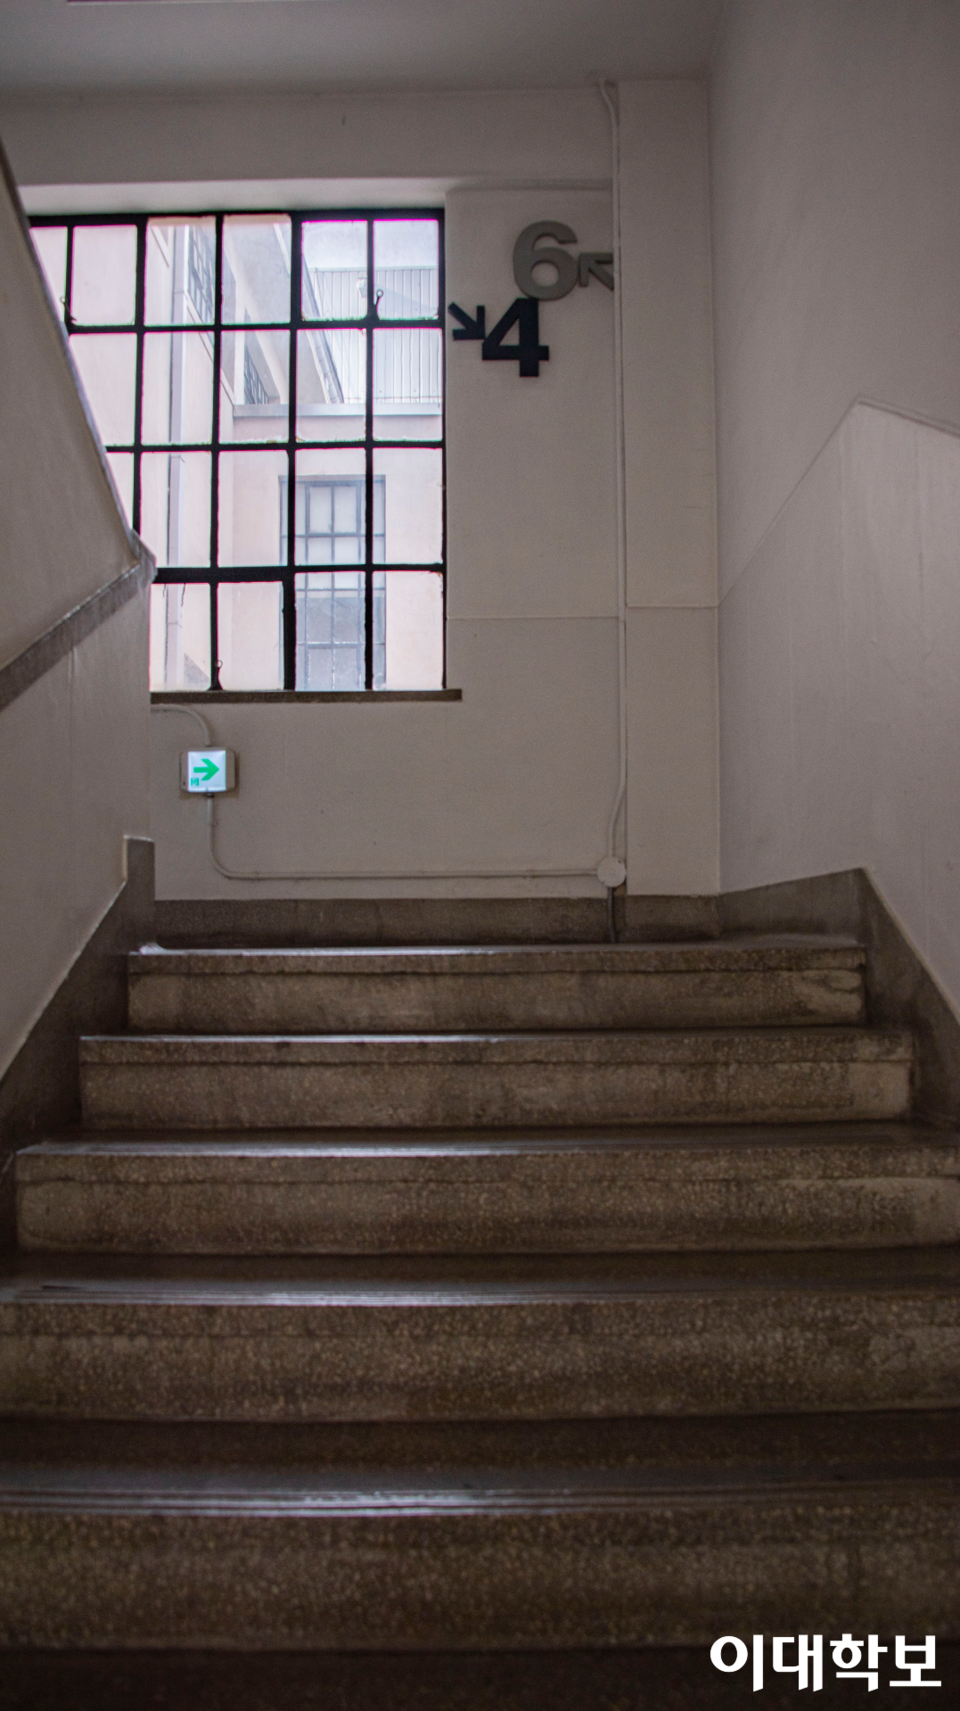 레크리에이션 홀로 갈 수 있는 계단. 4층에서 바로 6층으로 연결된다. 사진=김서영 기자 toki987@ewhain.net